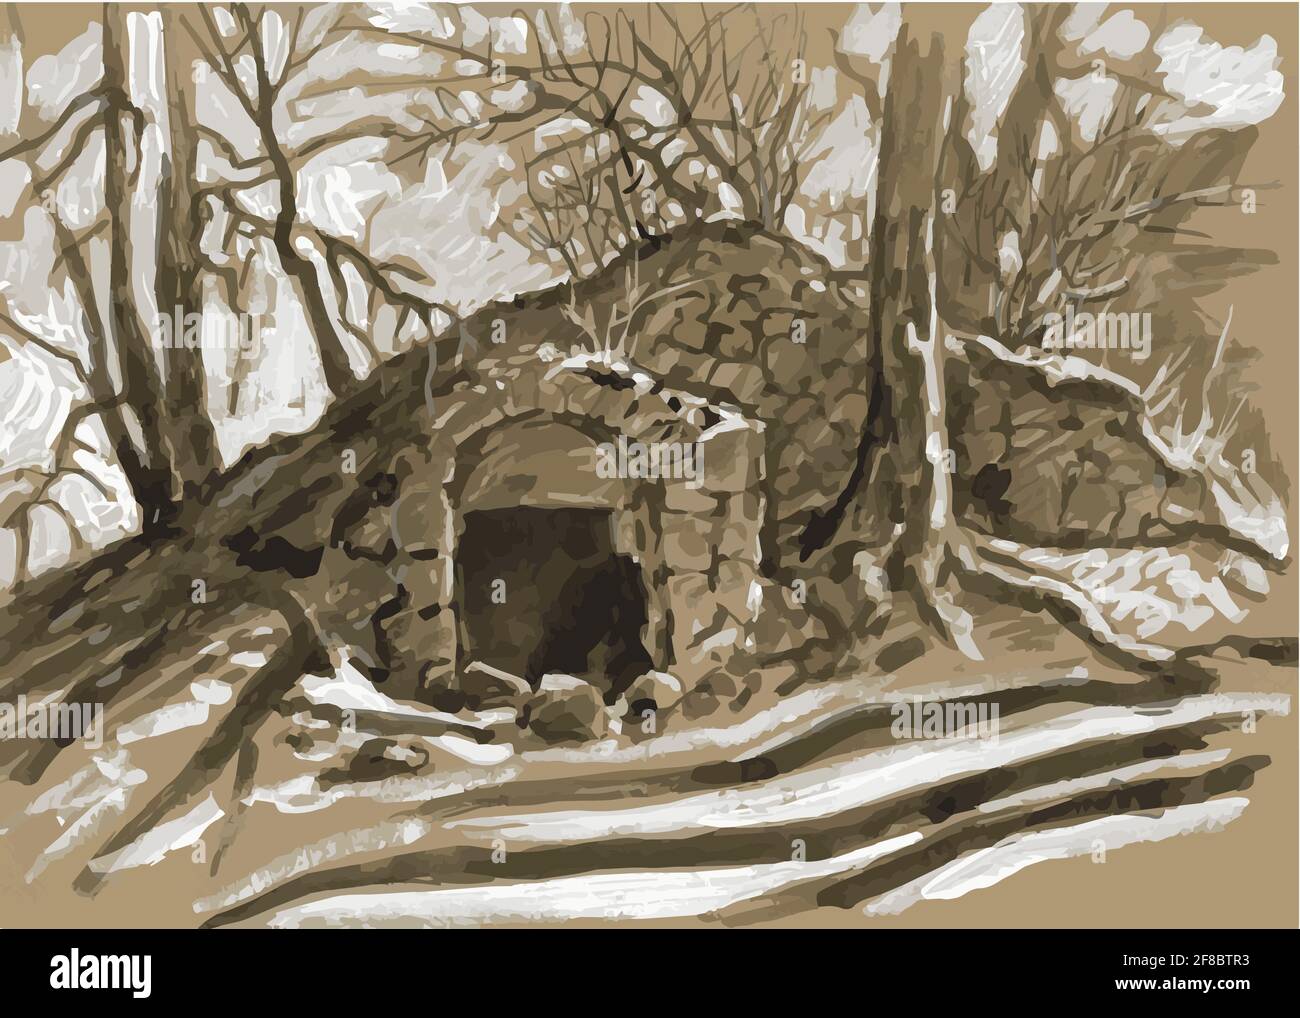 Heruntergekommener Eingang zu einem alten unterirdischen Keller auf einem Hügel mit Bäumen. Aquarellskizze. Schwarzweiß, Grisaille, Sepia Stock Vektor